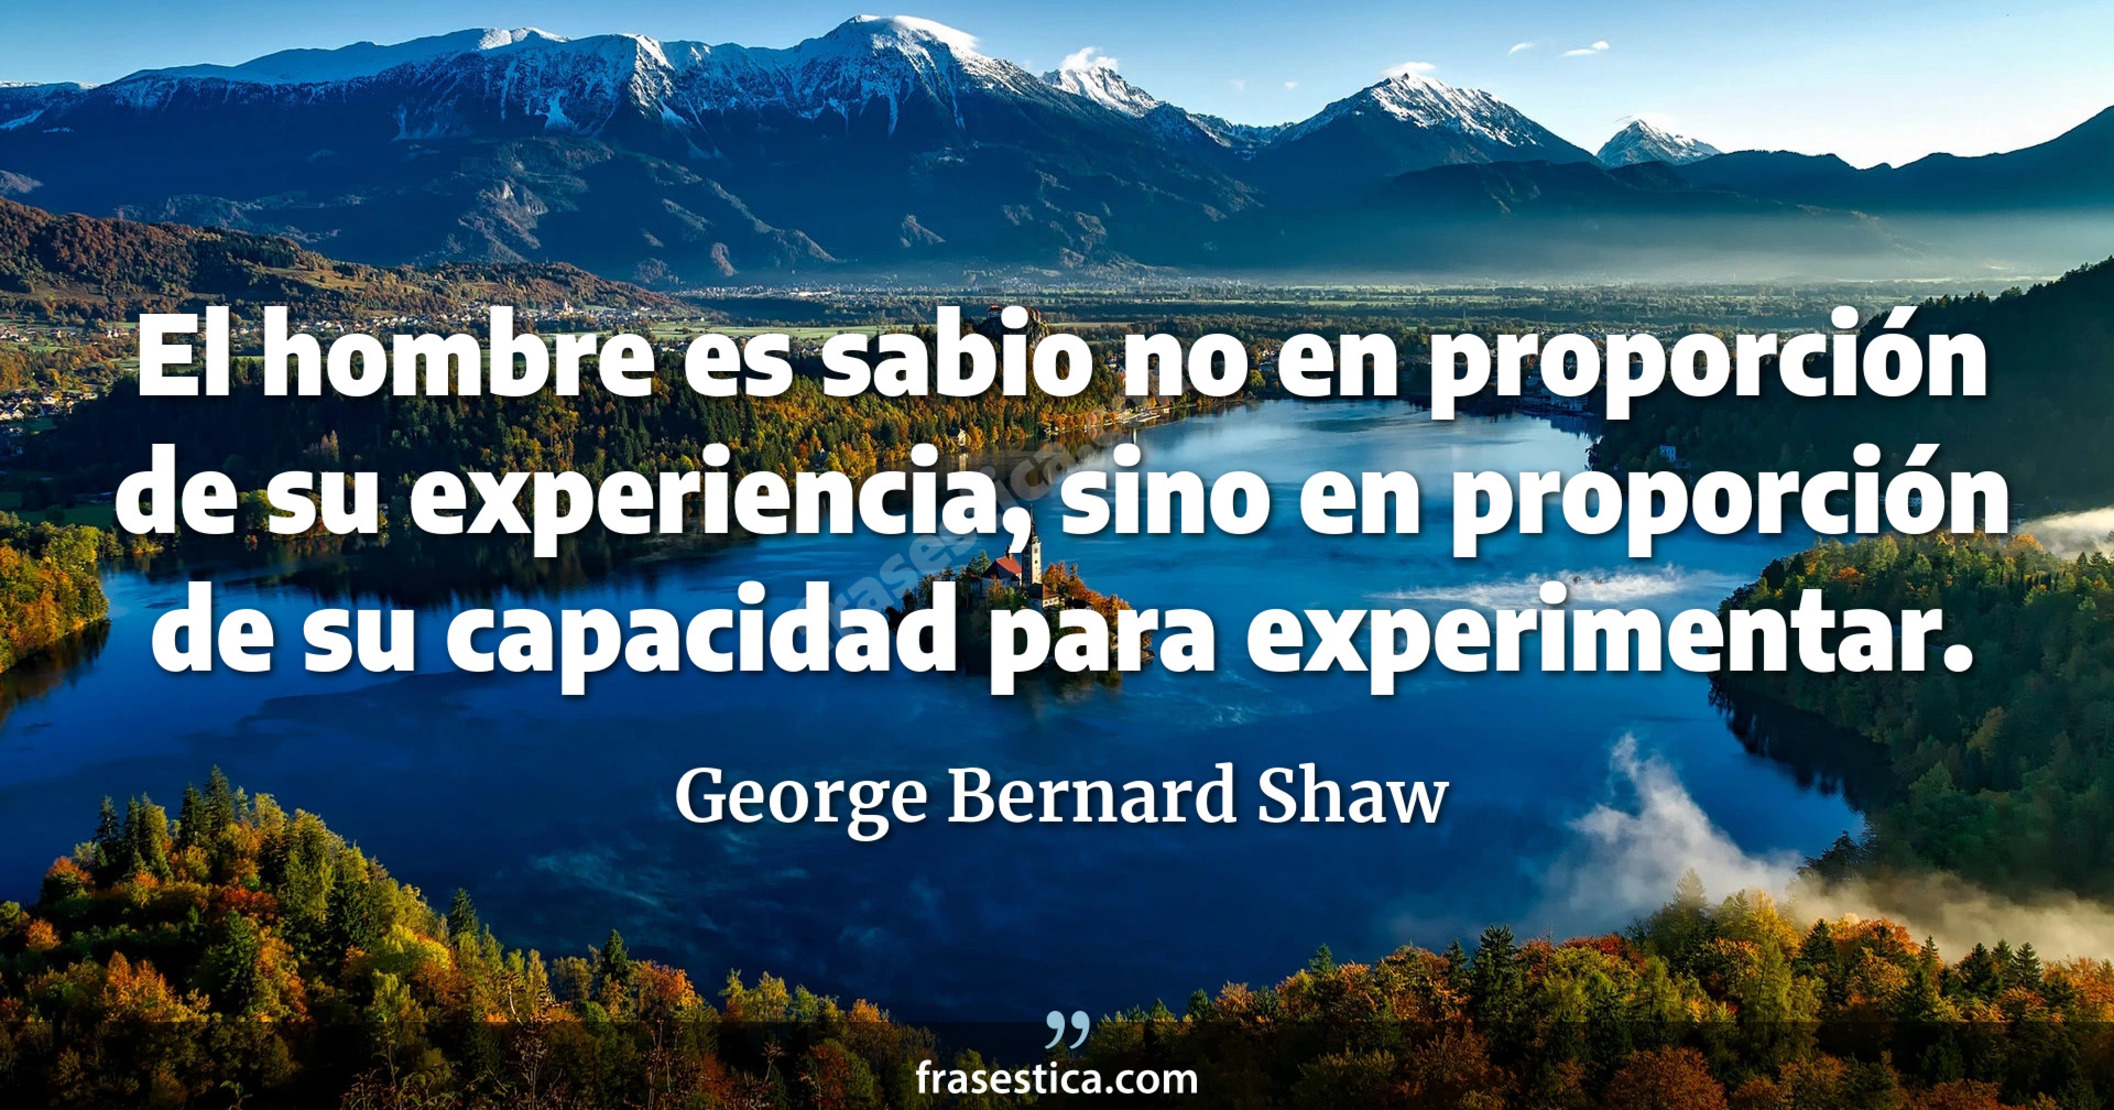 El hombre es sabio no en proporción de su experiencia, sino en proporción de su capacidad para experimentar. - George Bernard Shaw